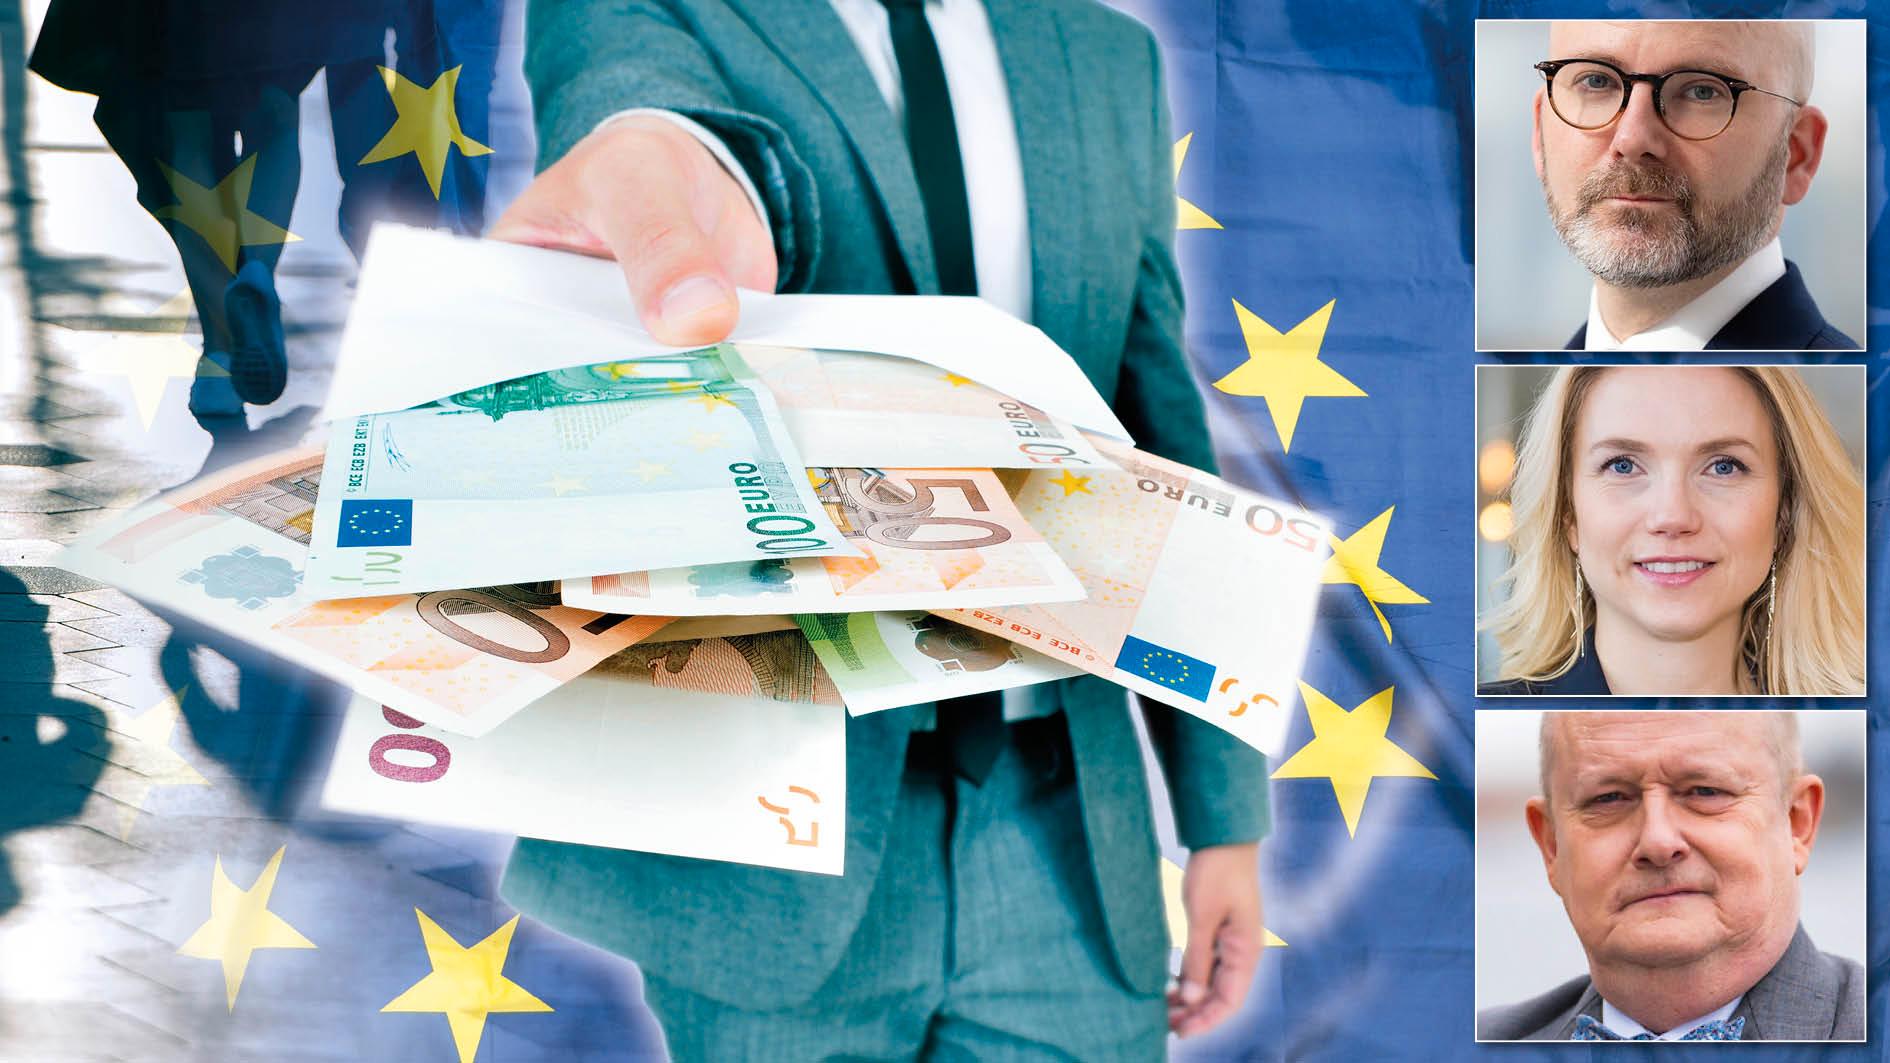 Mellan EU-inträdet 1995 och fram till slutet av 2022 har Sverige betalat in över 500 miljarder kronor mer än vad vi fått tillbaka från EU. Det är hög tid att utreda frågan – vad får Sverige för EU-pengarna? skriver SD:s tre toppkandidater i valet till Europaparlamentet.